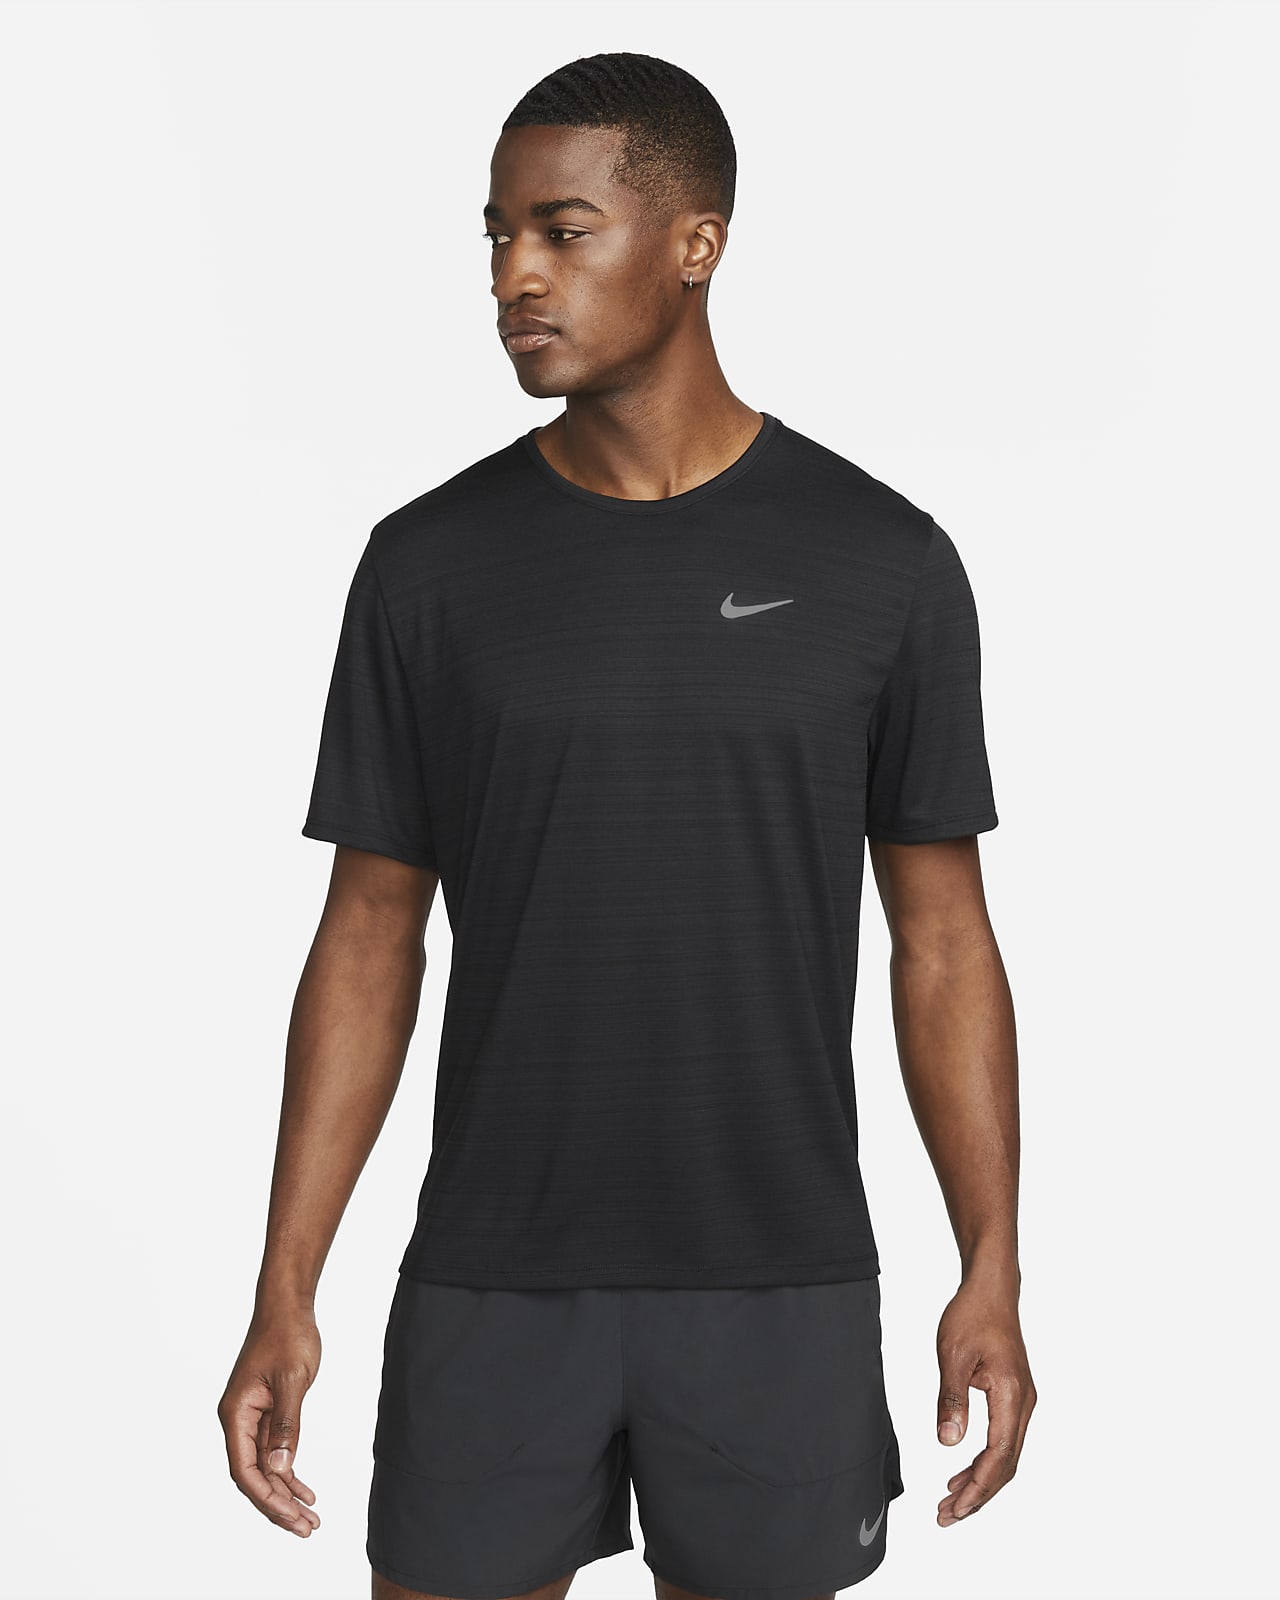 Nike Dri-FIT Miler Men's Running Top